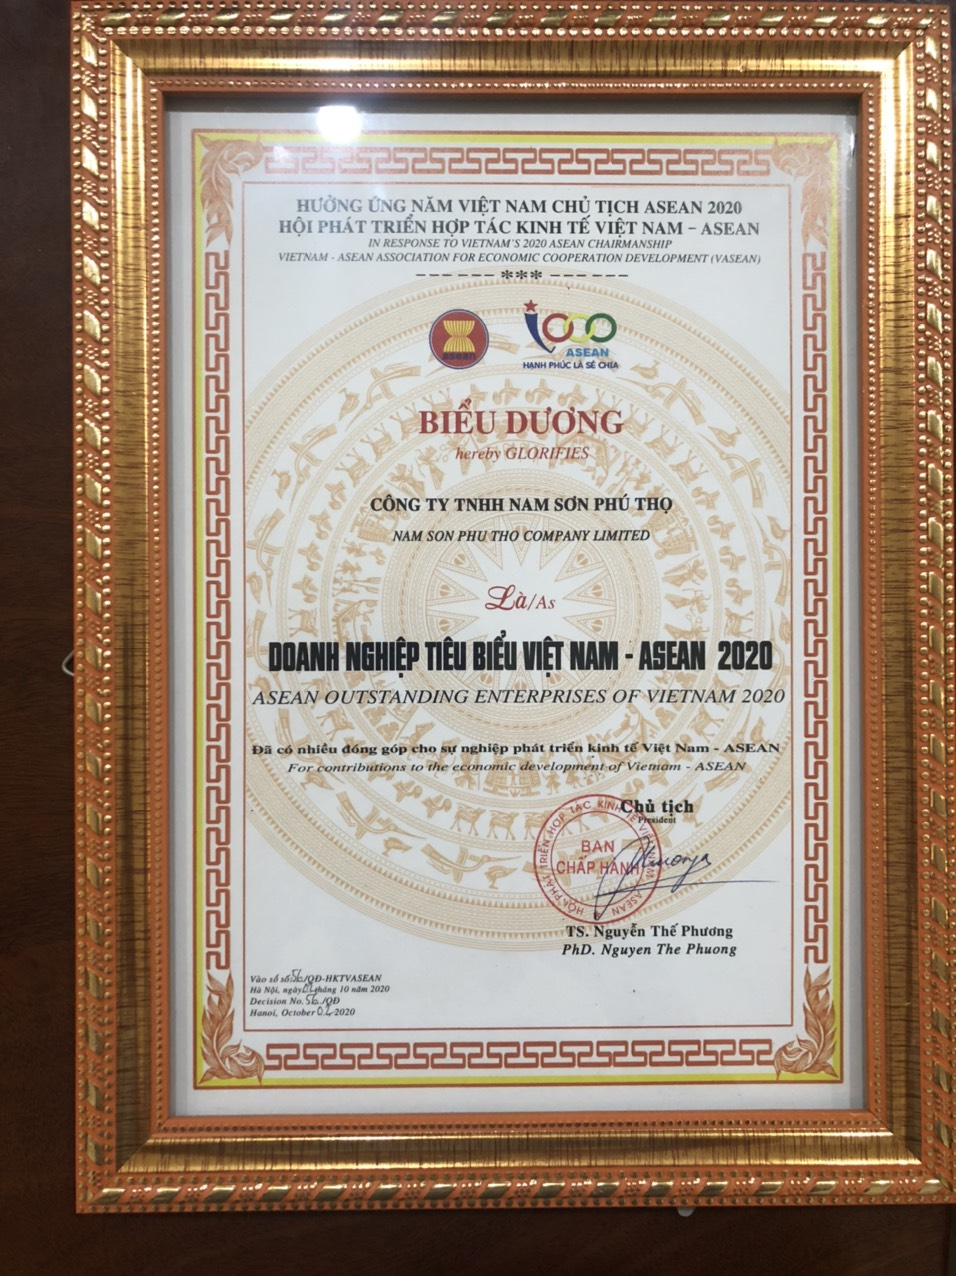 (Công ty TNHH Nam Sơn Phú Thọ nhận bằng khen Doanh nghiệp tiêu biểu Việt Nam Asean 2020)